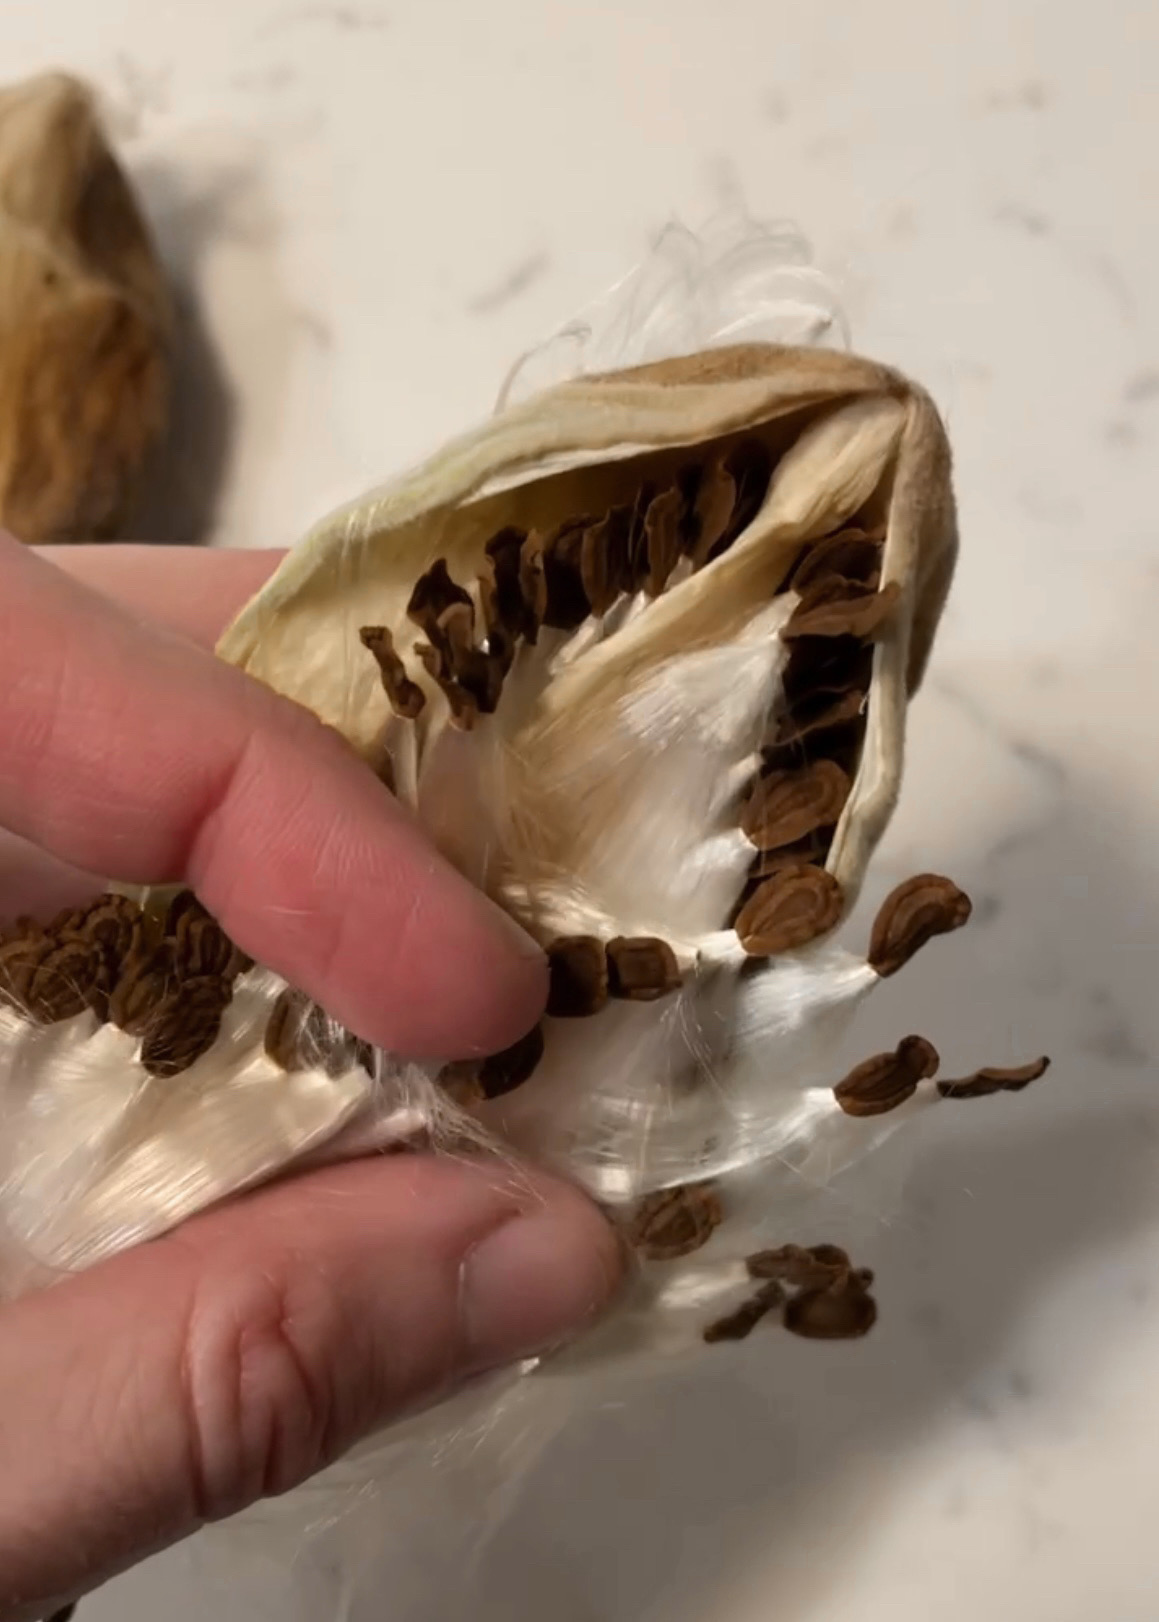 Milkweed pod with seeds inside.